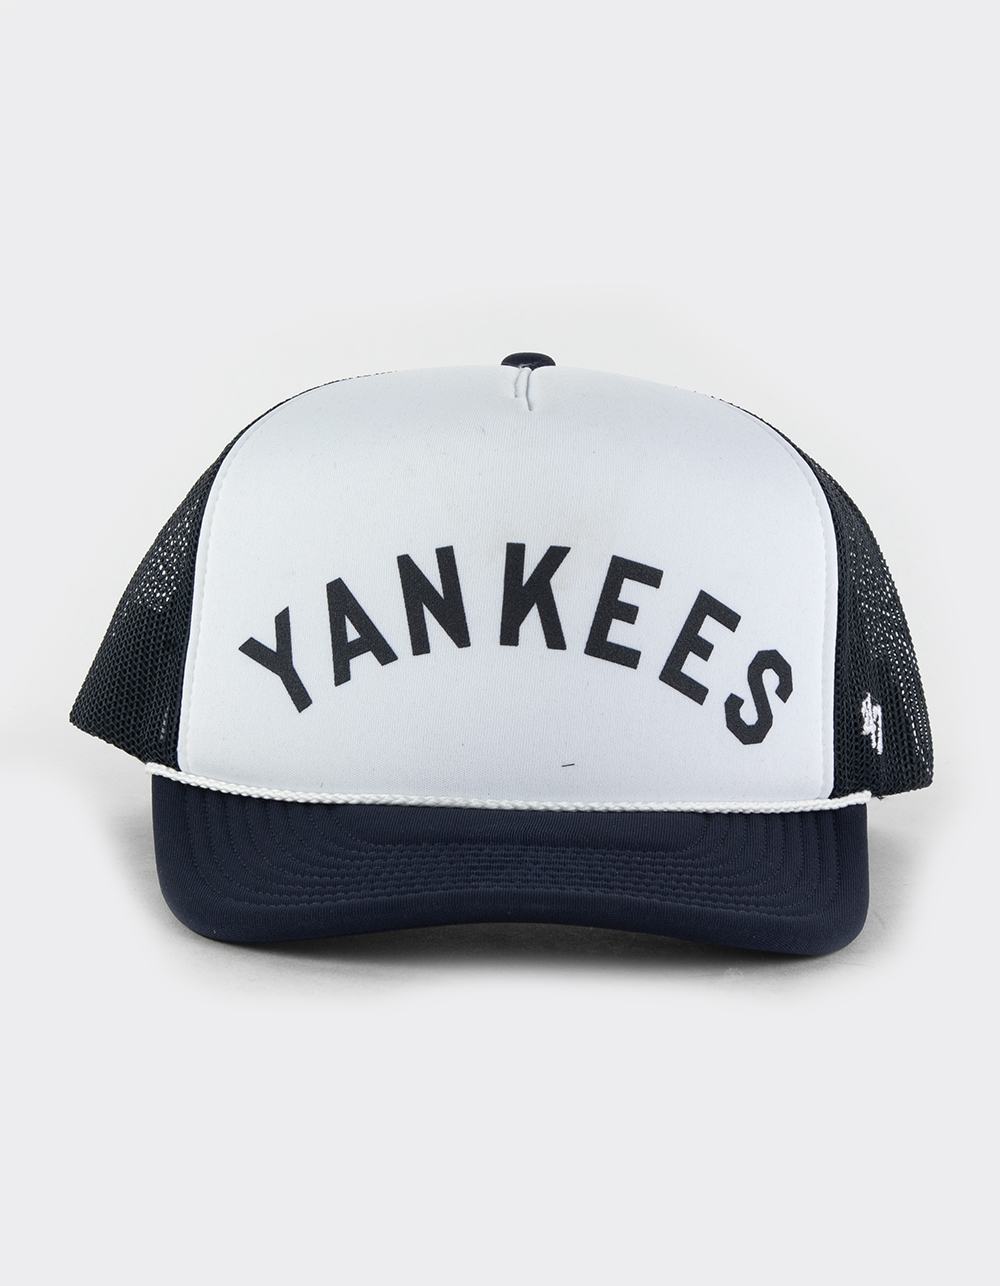 47 yankees hat